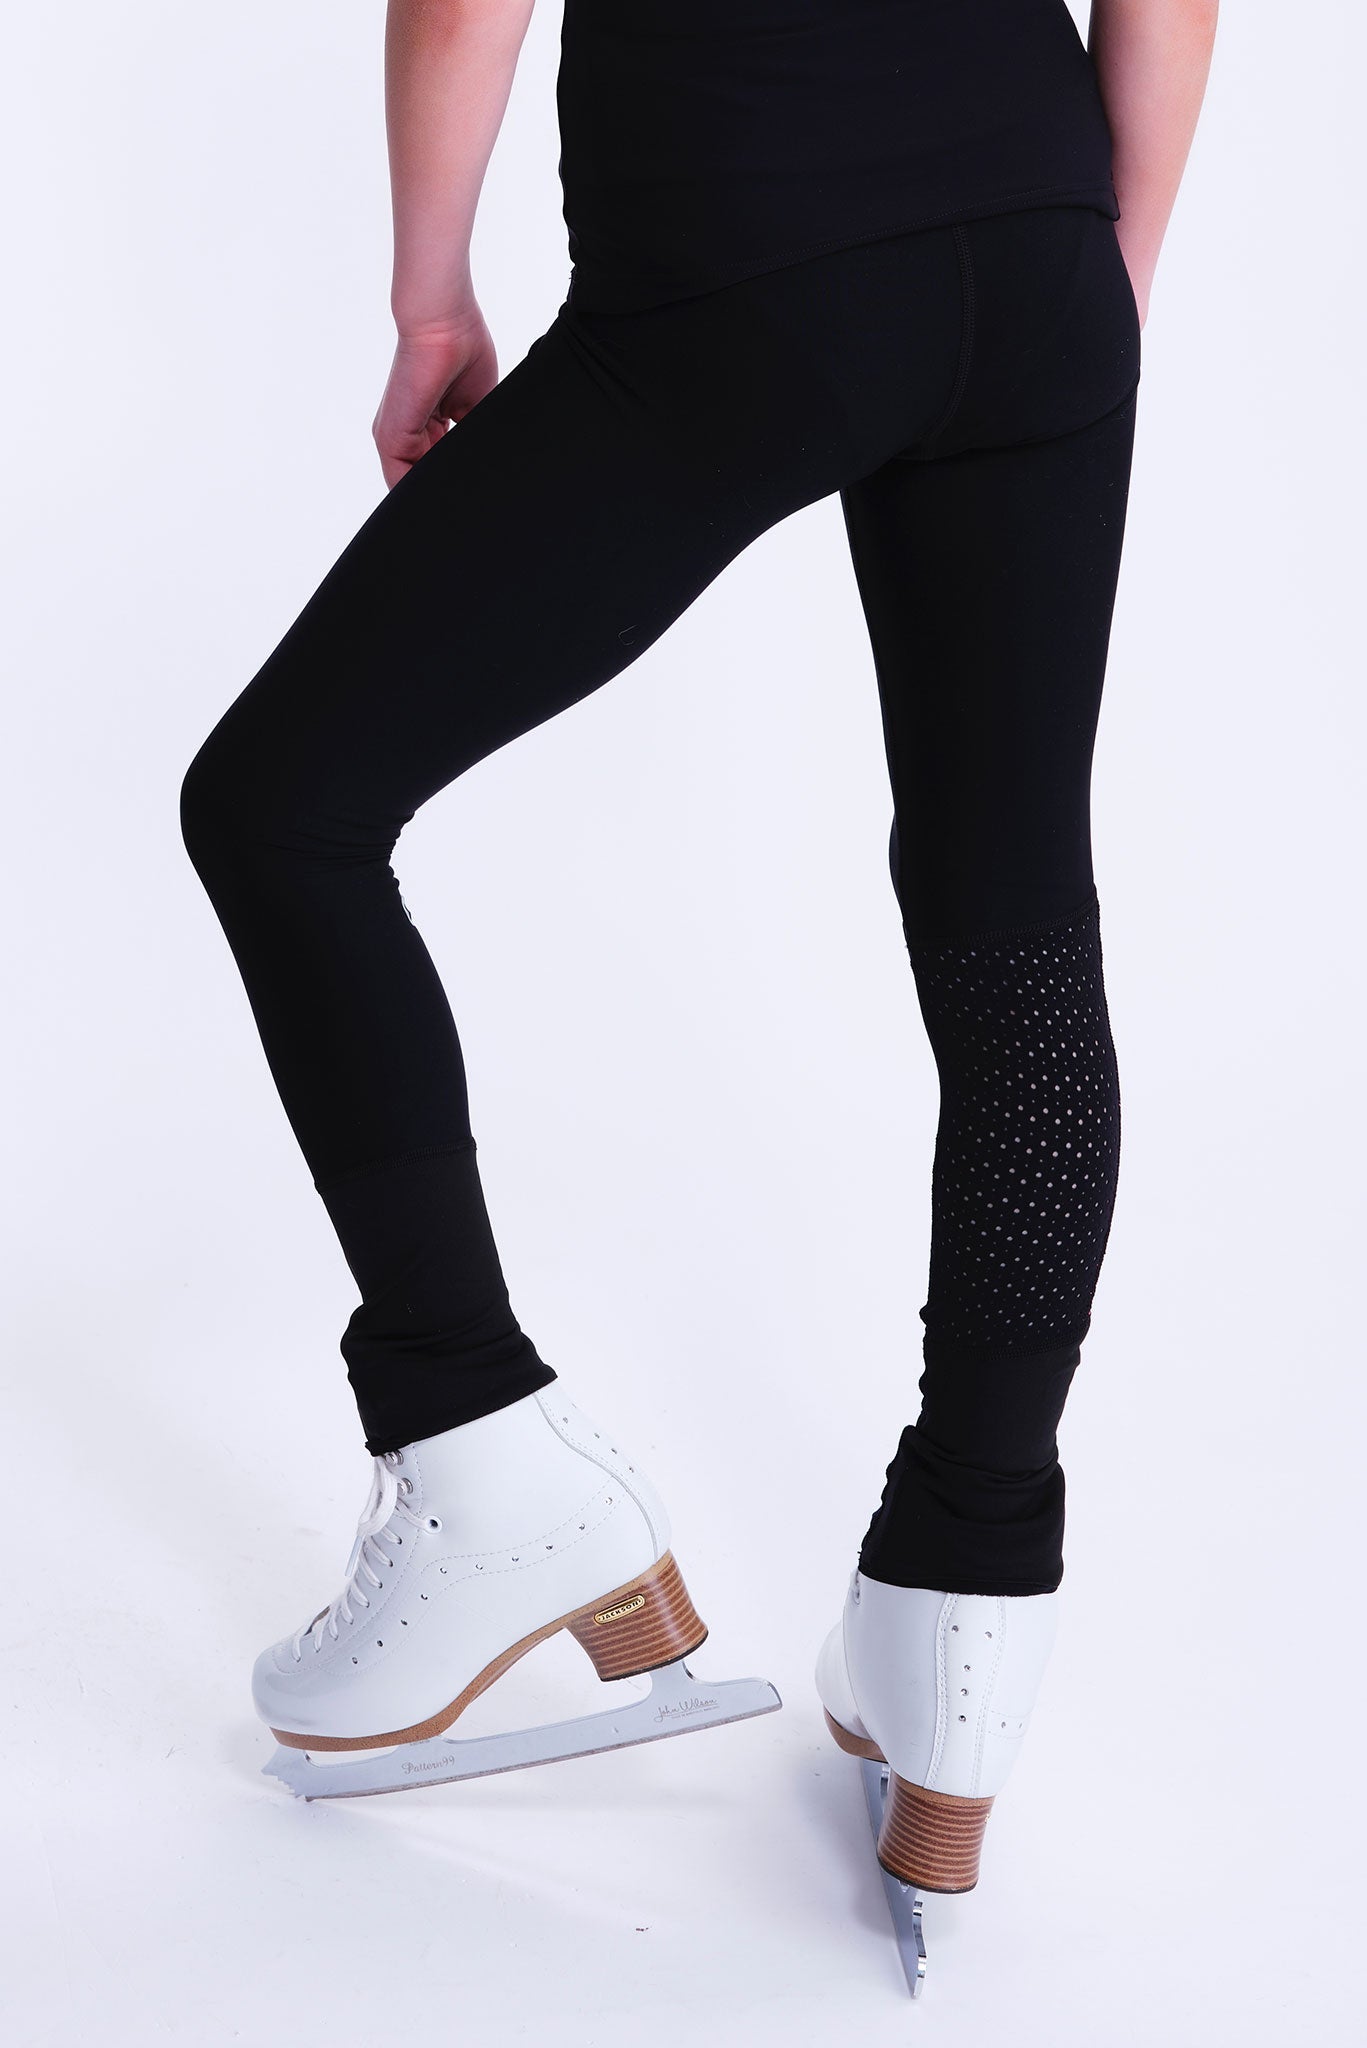 Inspire Non-Slip Leggings in Black